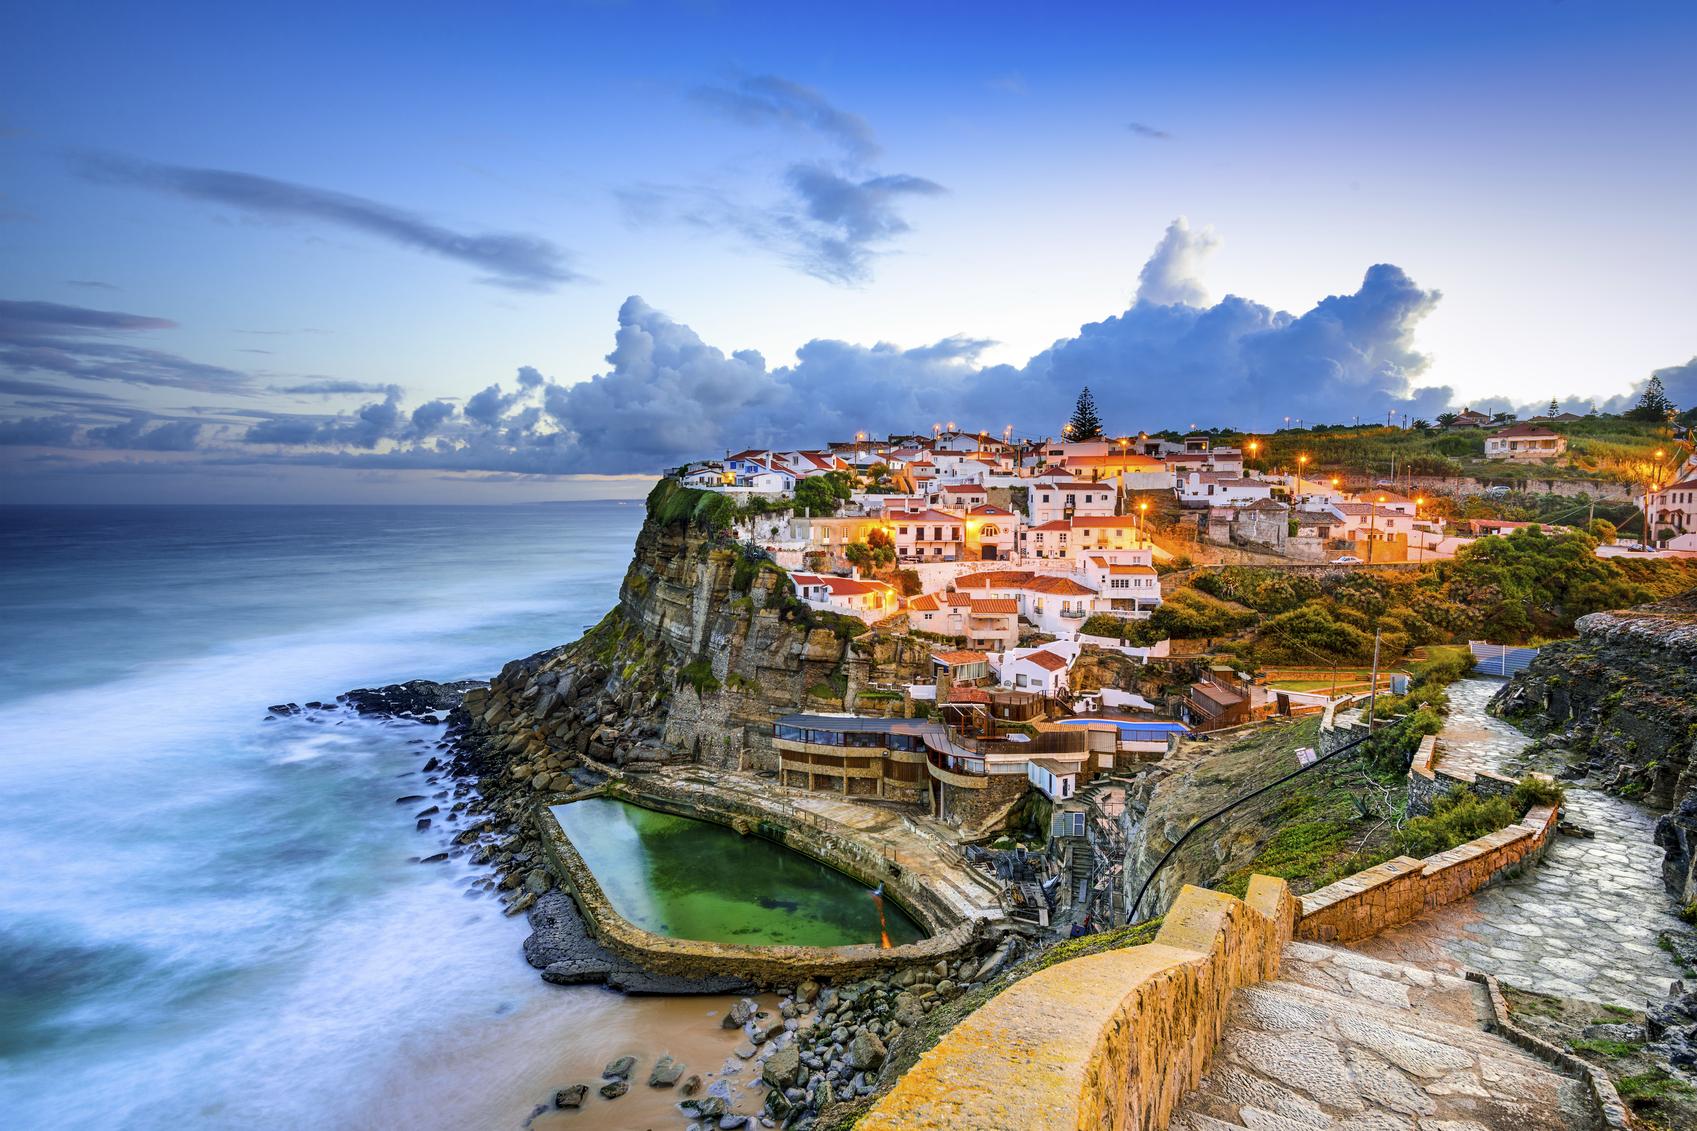 De kust van Portugal. (foto istock)